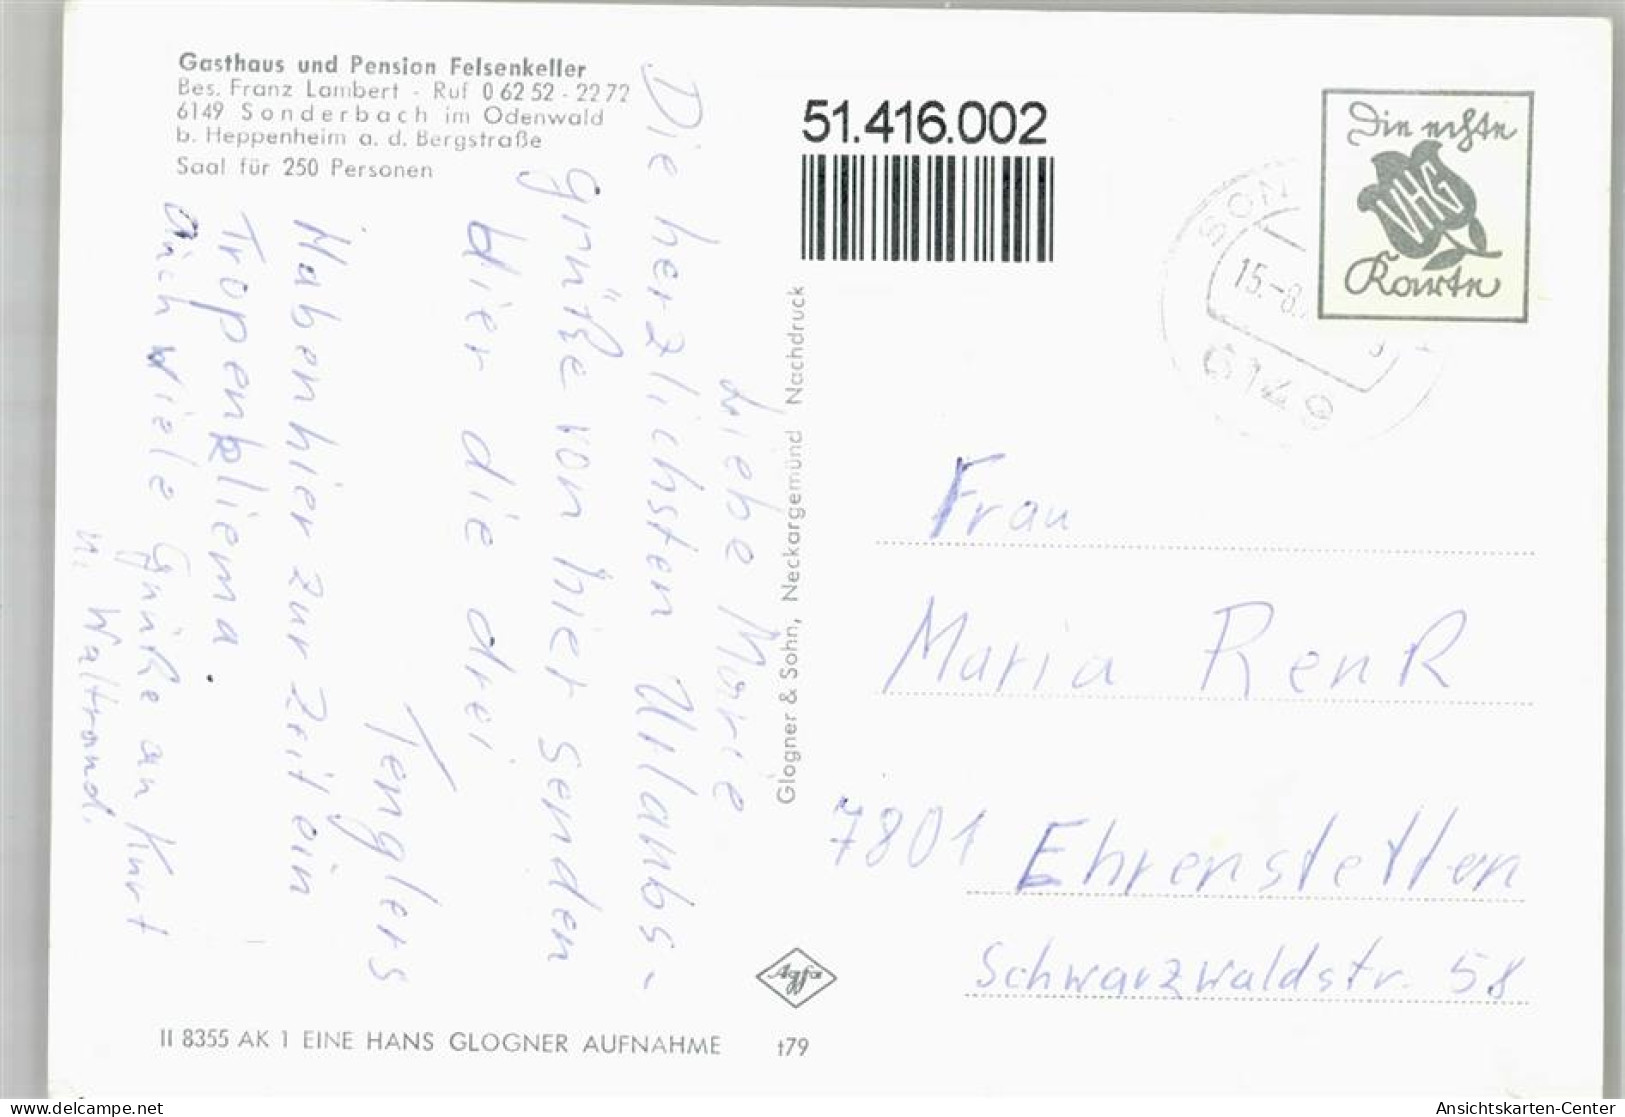 51416002 - Sonderbach - Heppenheim